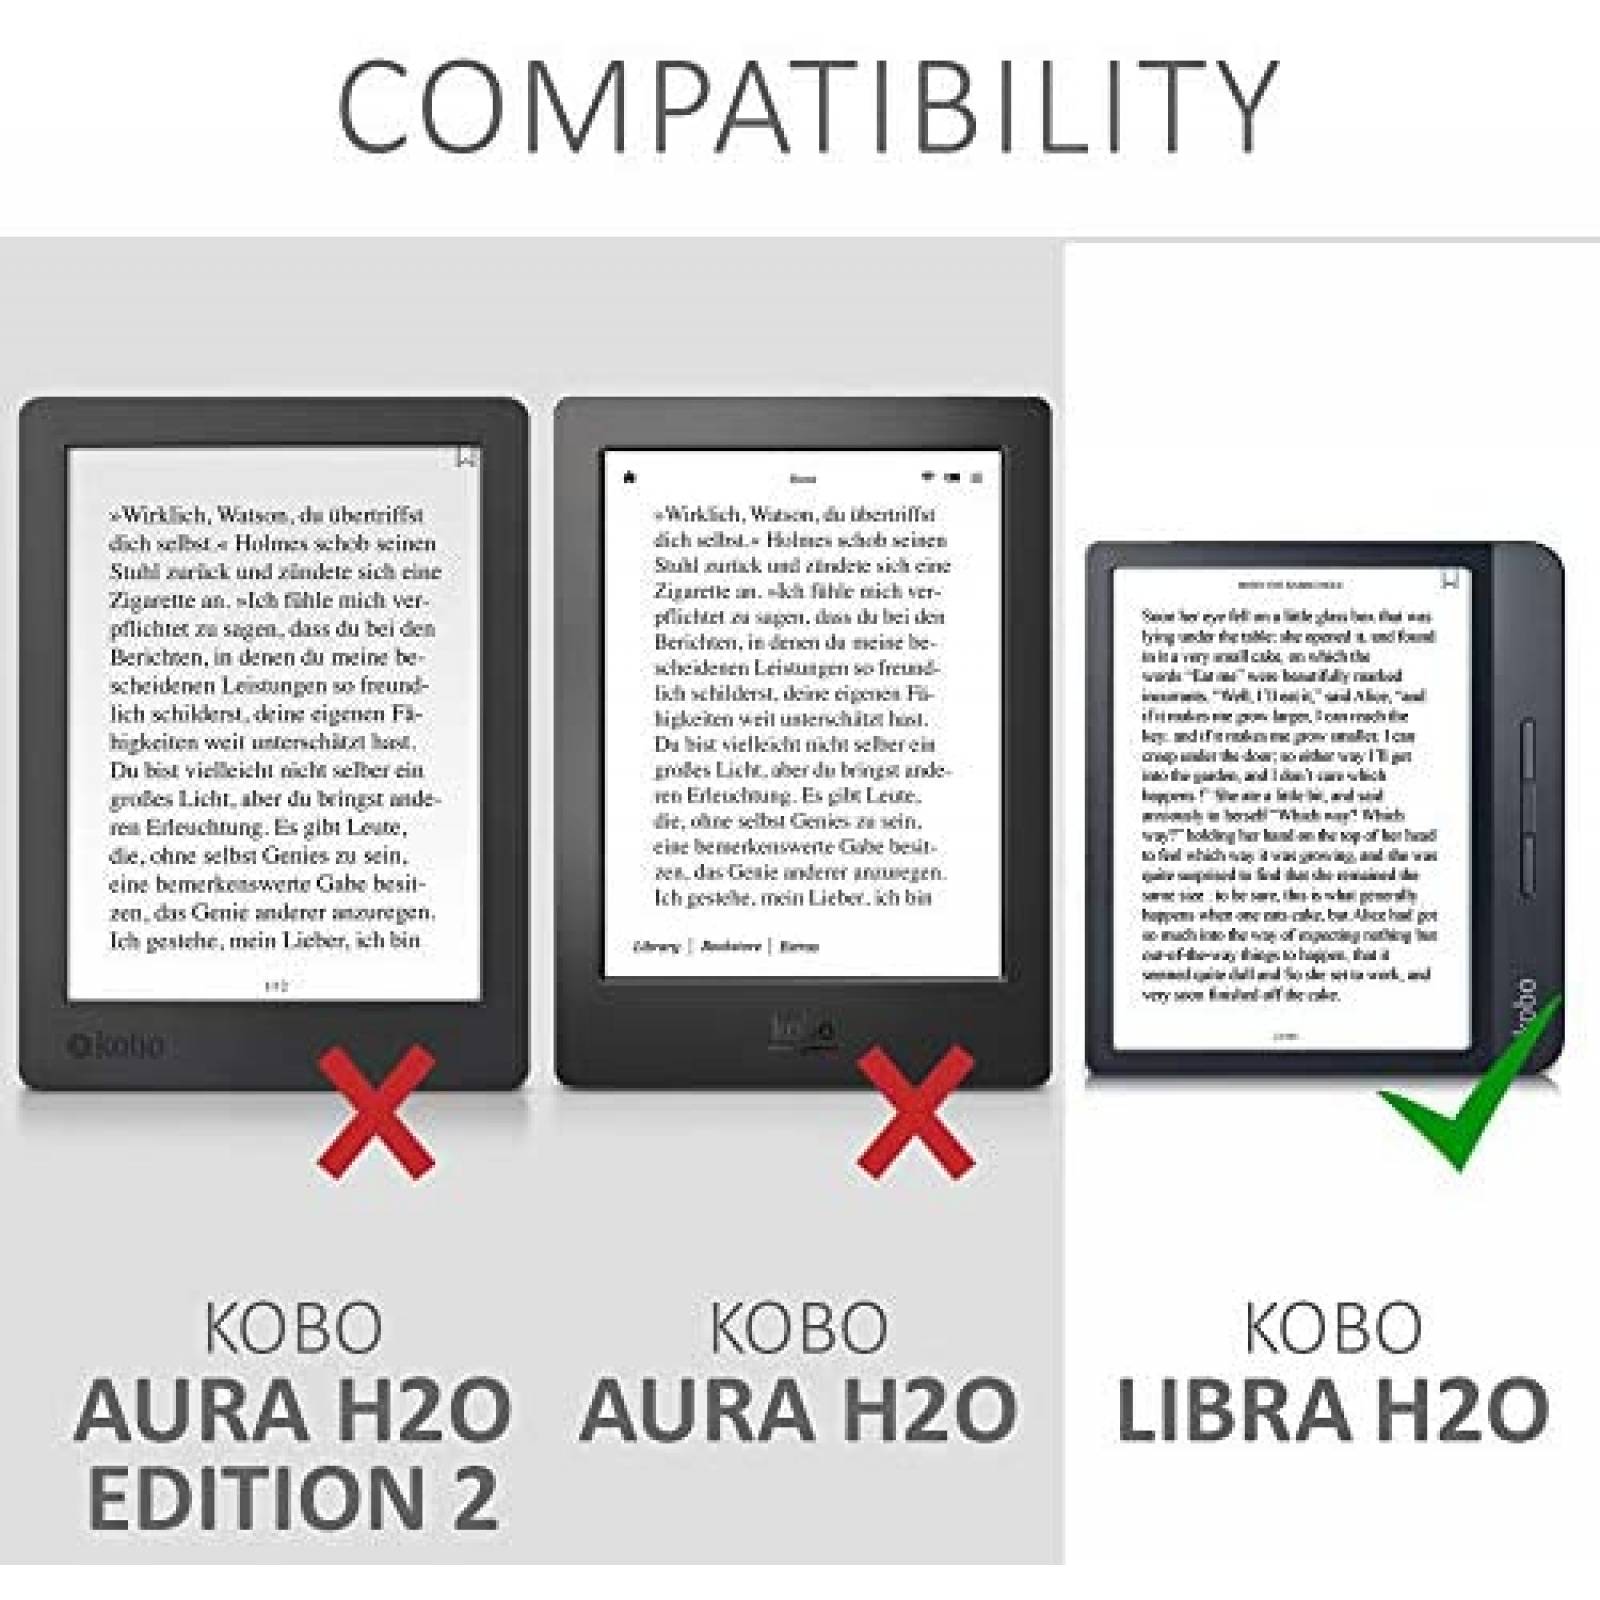 kwmobile Carcasa Compatible con Kobo Libra 2 Funda - Funda con